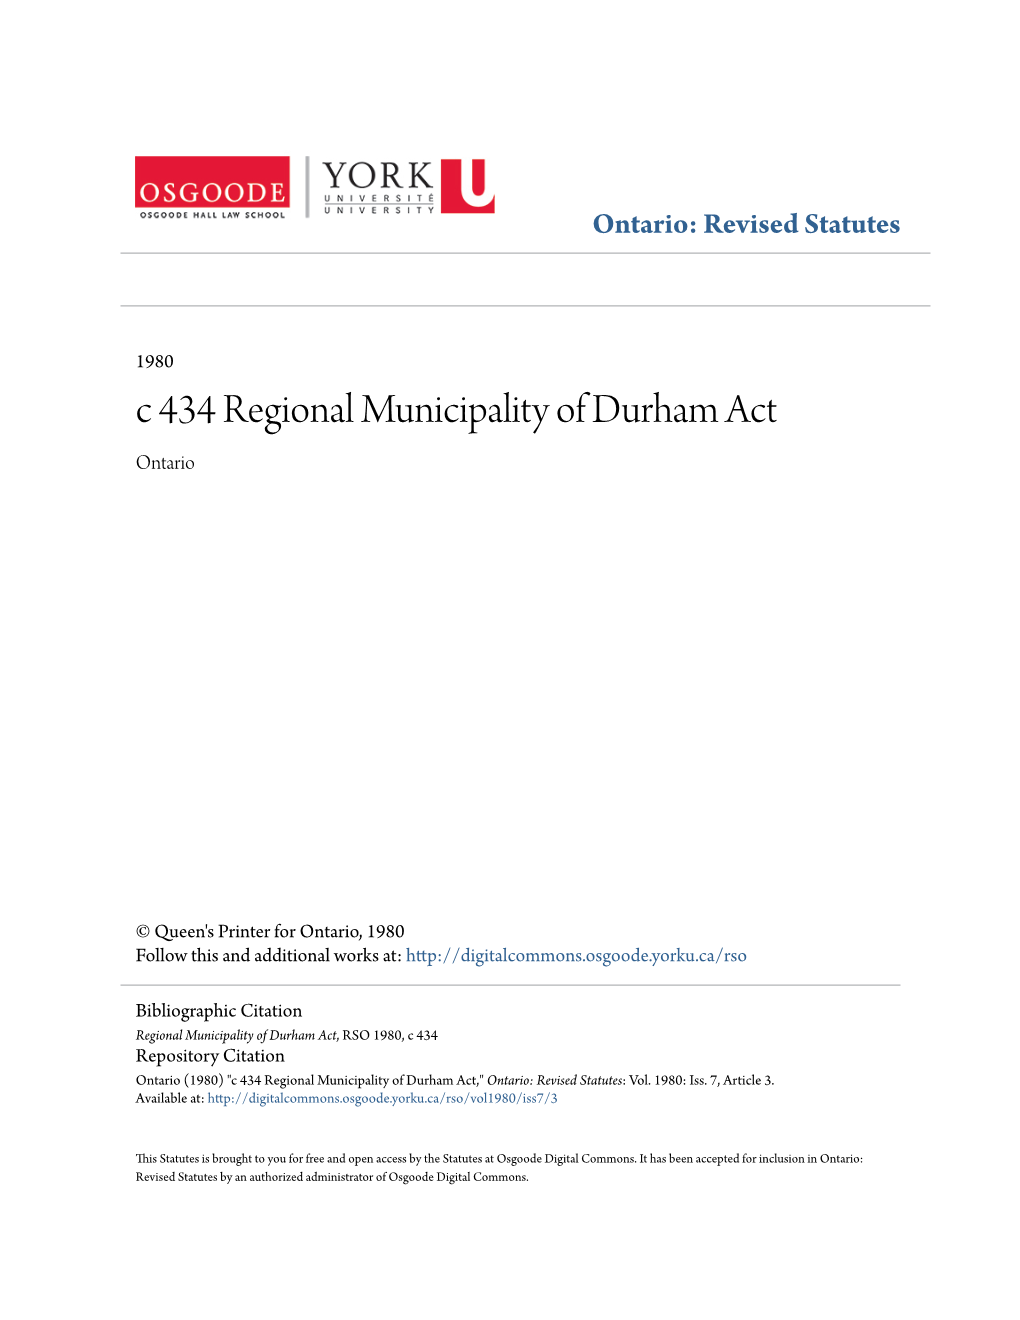 C 434 Regional Municipality of Durham Act Ontario